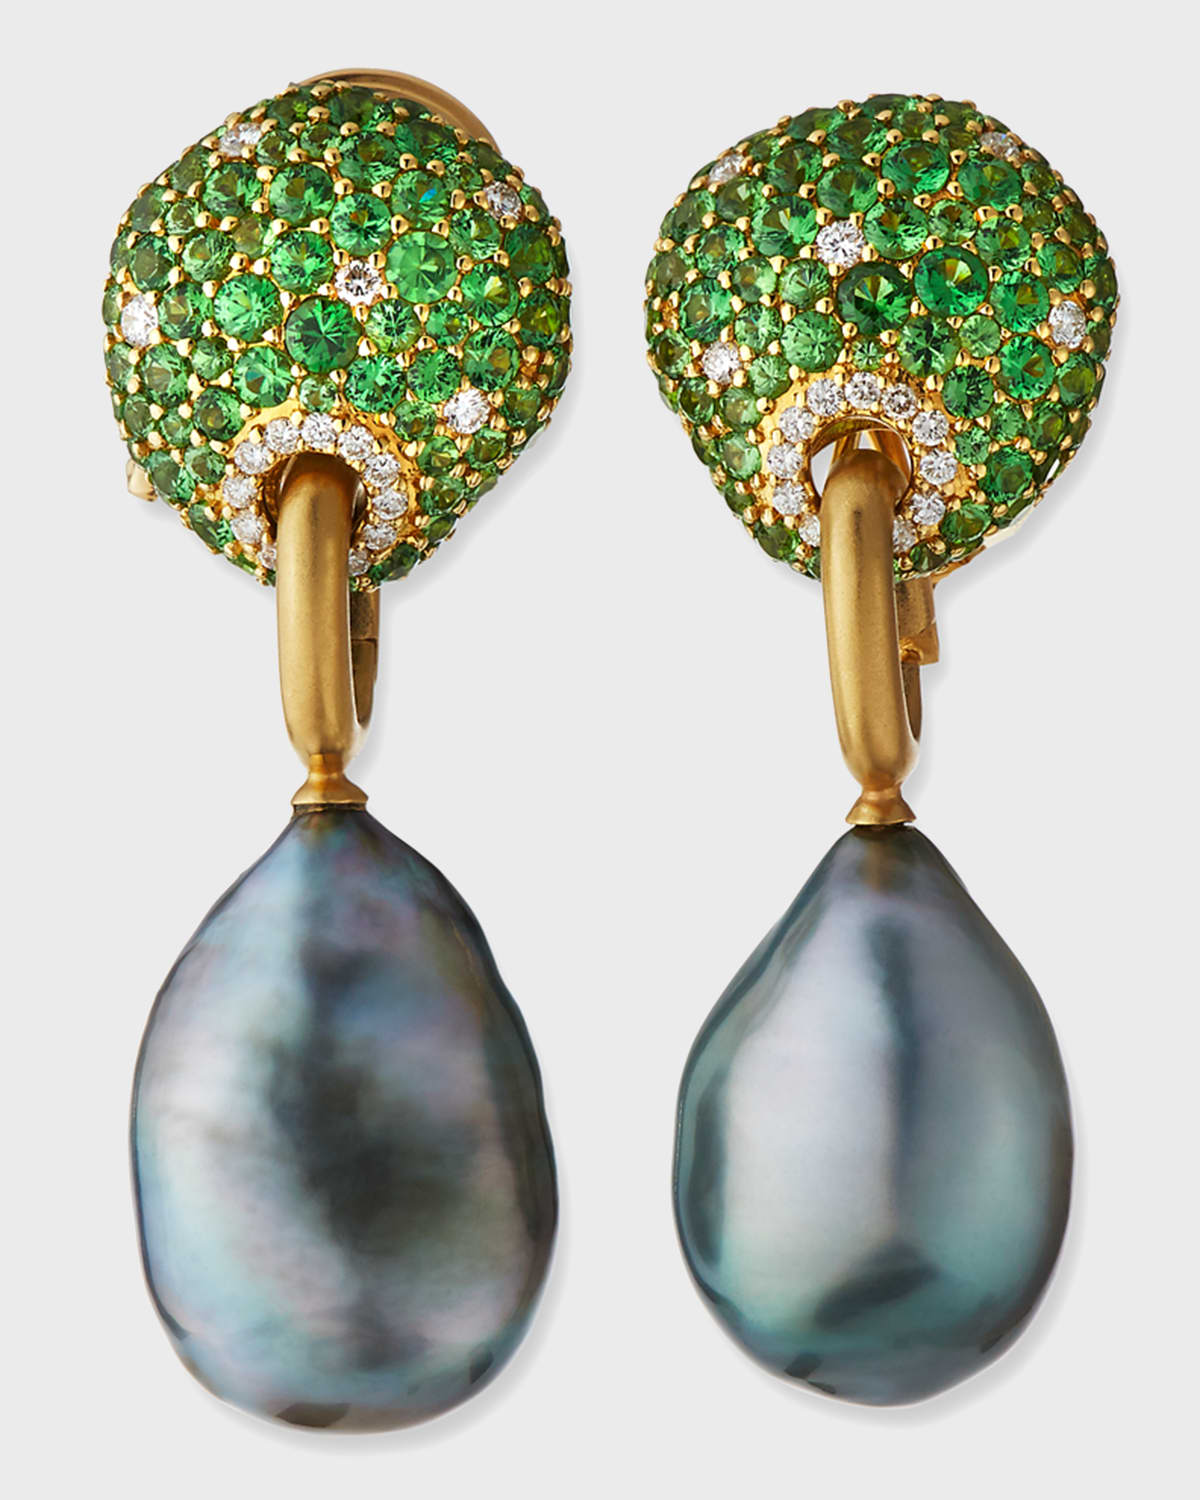 Margot McKinney Jewelry 18k Tsavorite & Diamond Earrings w/ Detachable Pearls